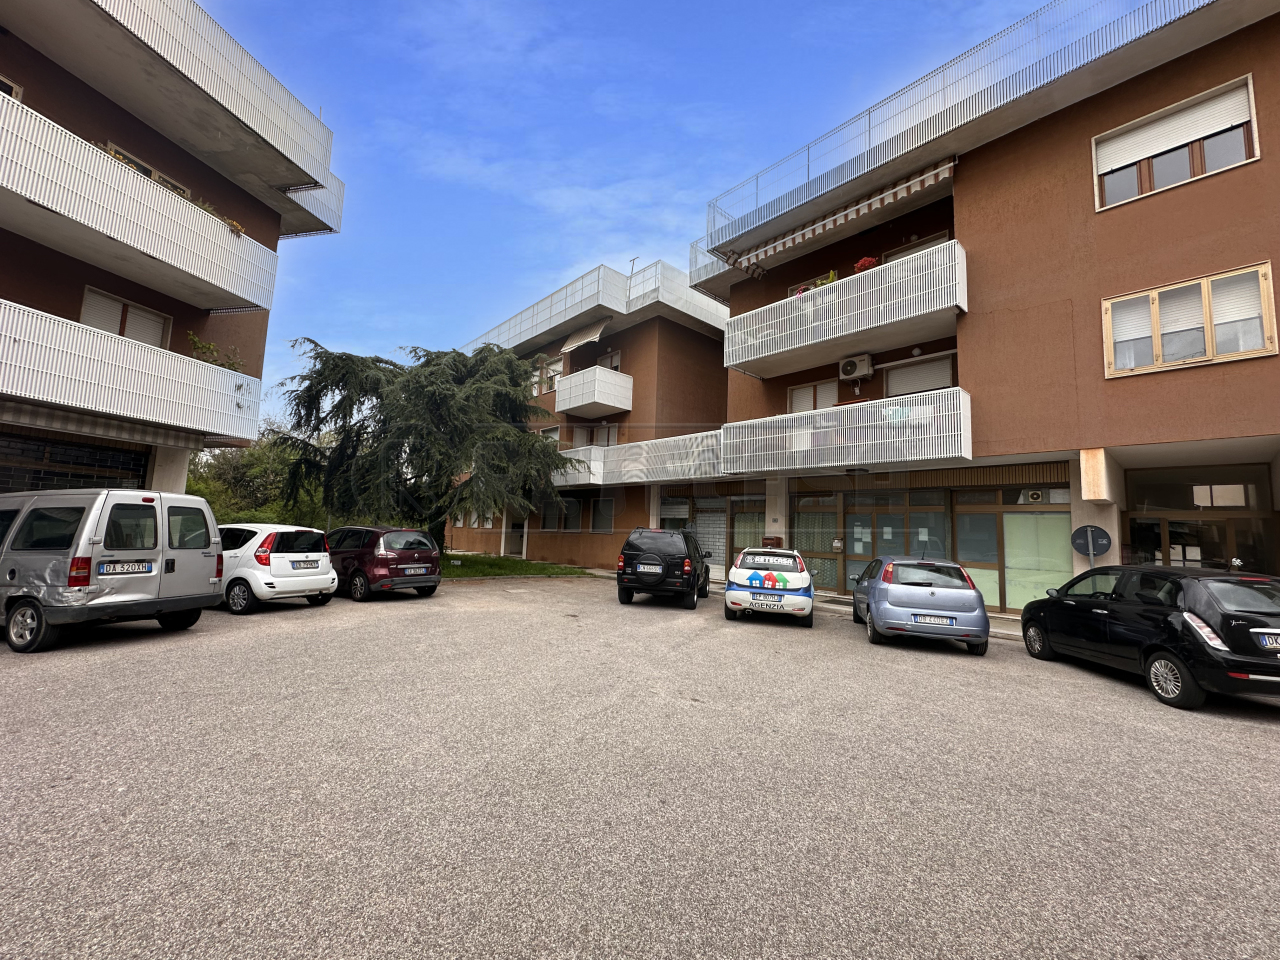 Appartamento in vendita a San Giovanni al Natisone, 8 locali, prezzo € 127.000 | PortaleAgenzieImmobiliari.it